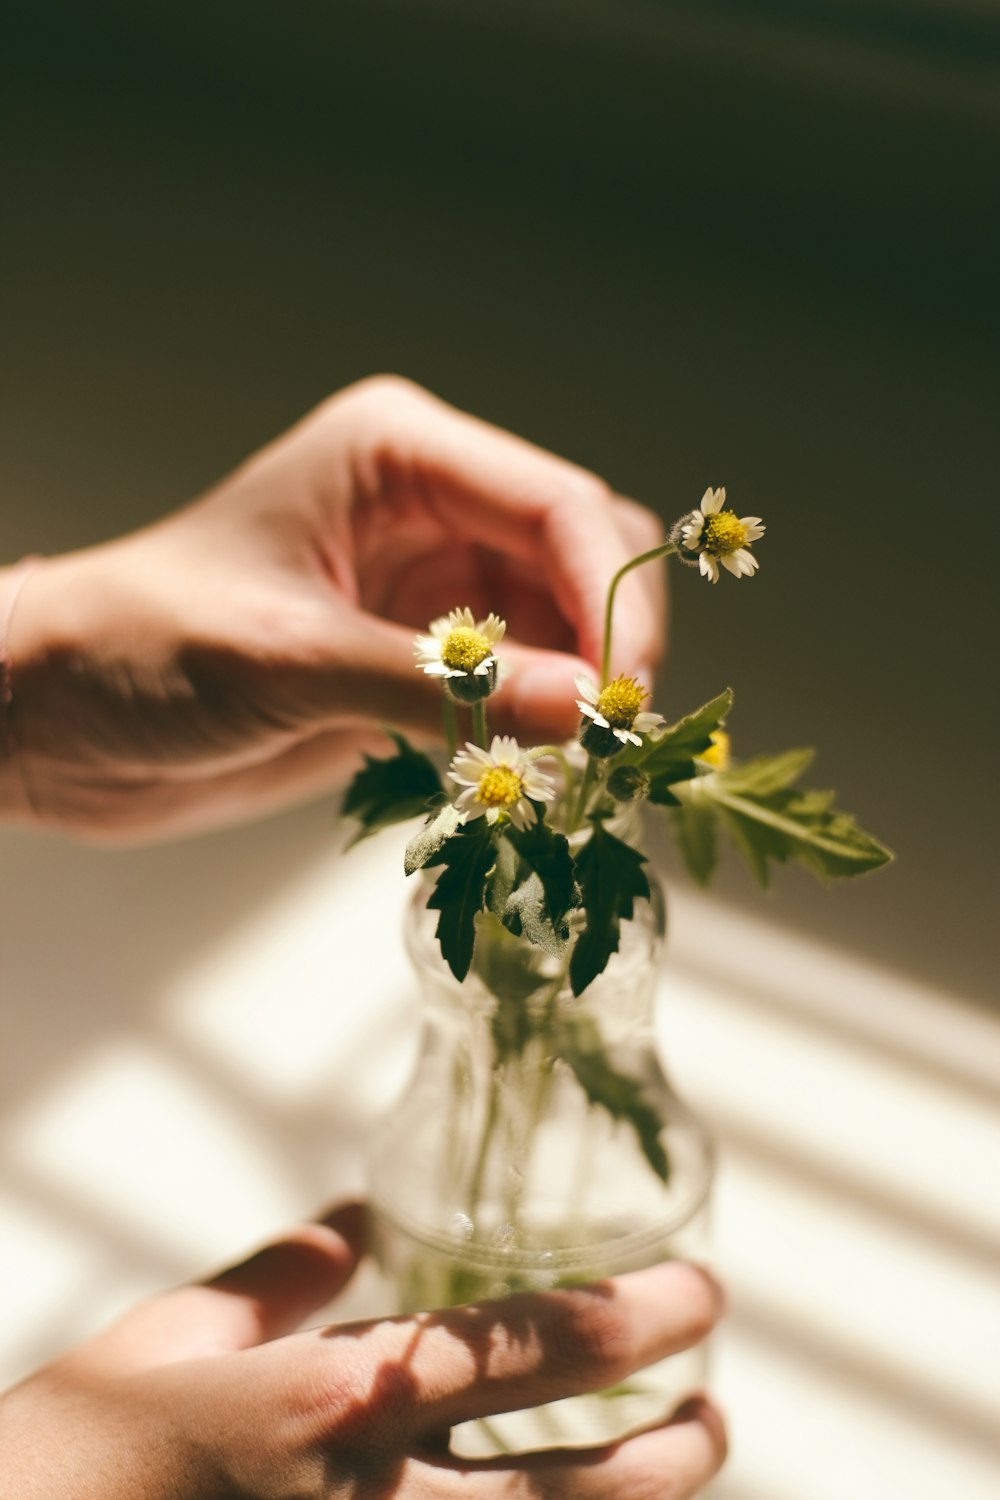 흰 데이지 꽃의 잎과 투명한 유리 꽃병을 들고 있는 사람의 손